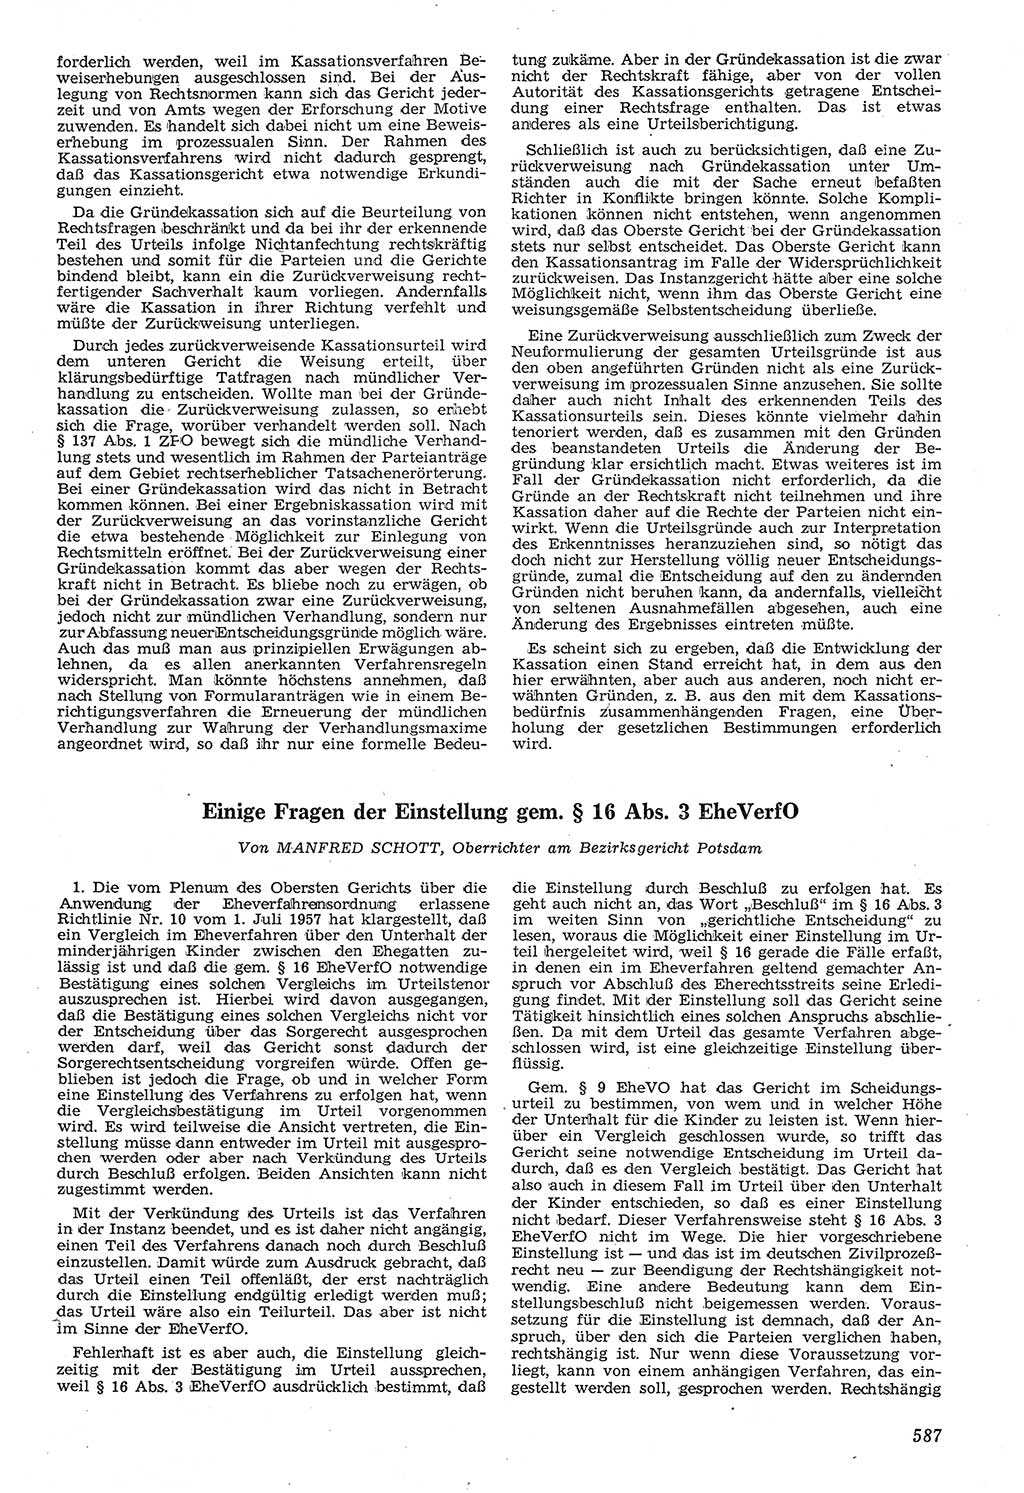 Neue Justiz (NJ), Zeitschrift für Recht und Rechtswissenschaft [Deutsche Demokratische Republik (DDR)], 11. Jahrgang 1957, Seite 587 (NJ DDR 1957, S. 587)